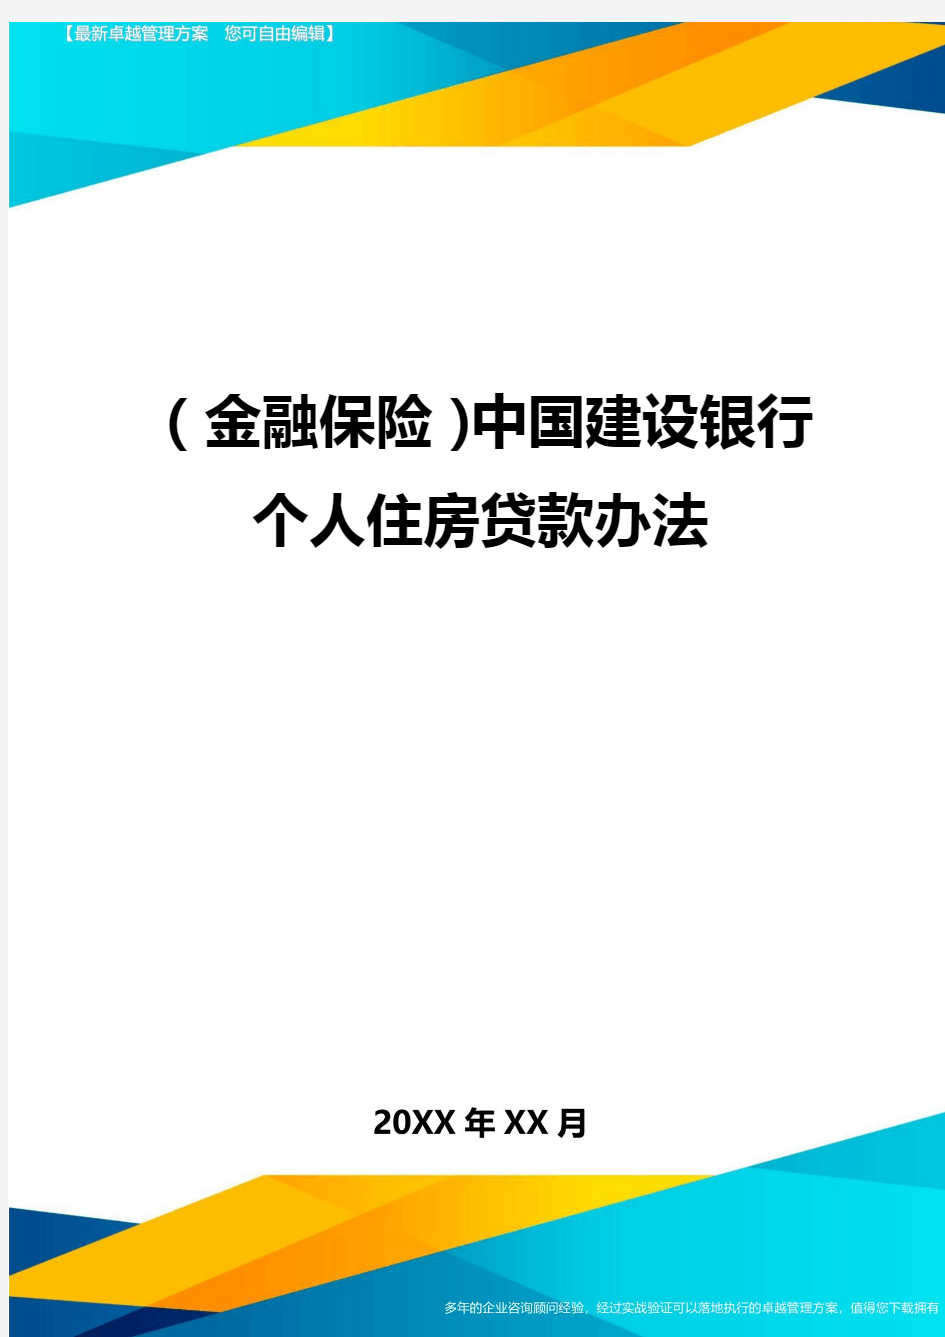 2020年(金融保险)中国建设银行个人住房贷款办法